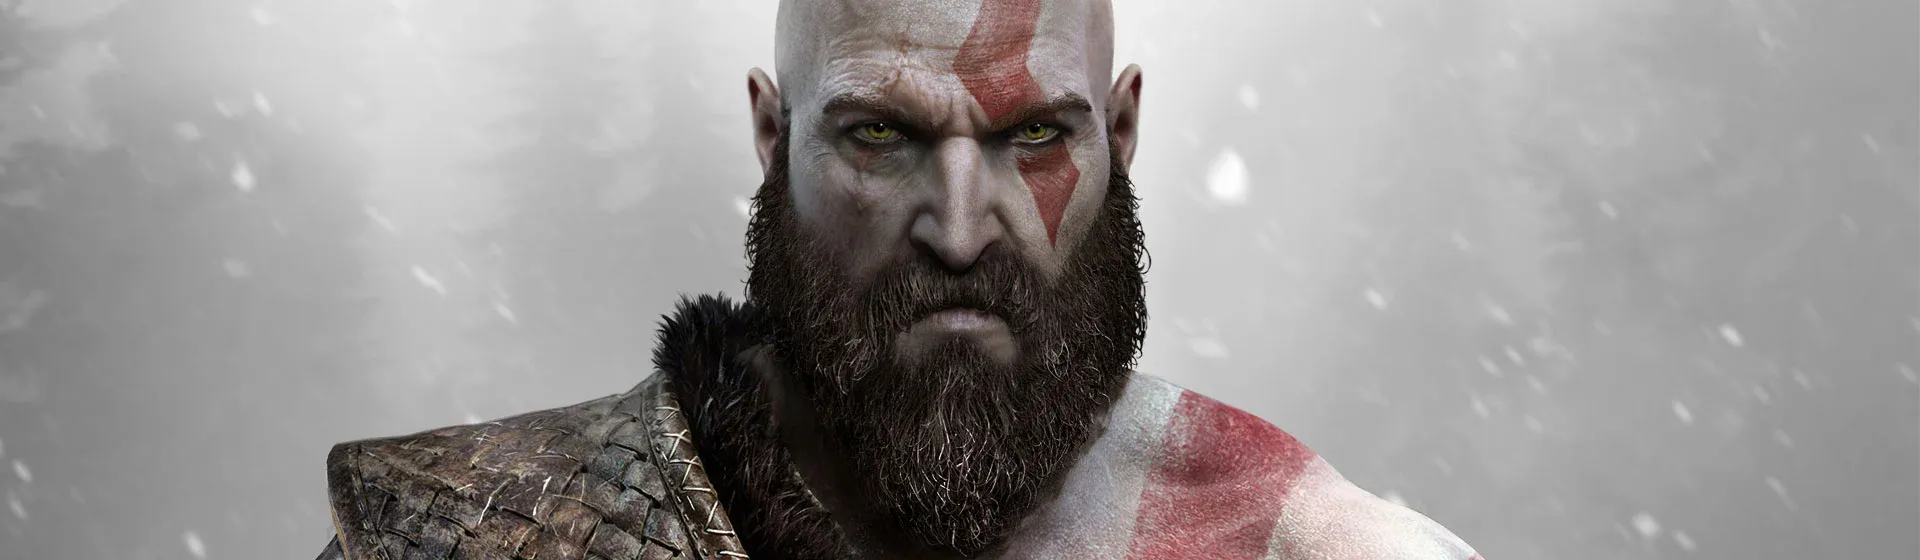 Arte do jogo God of War com o rosto do protagonista Kratos no centro, de barba